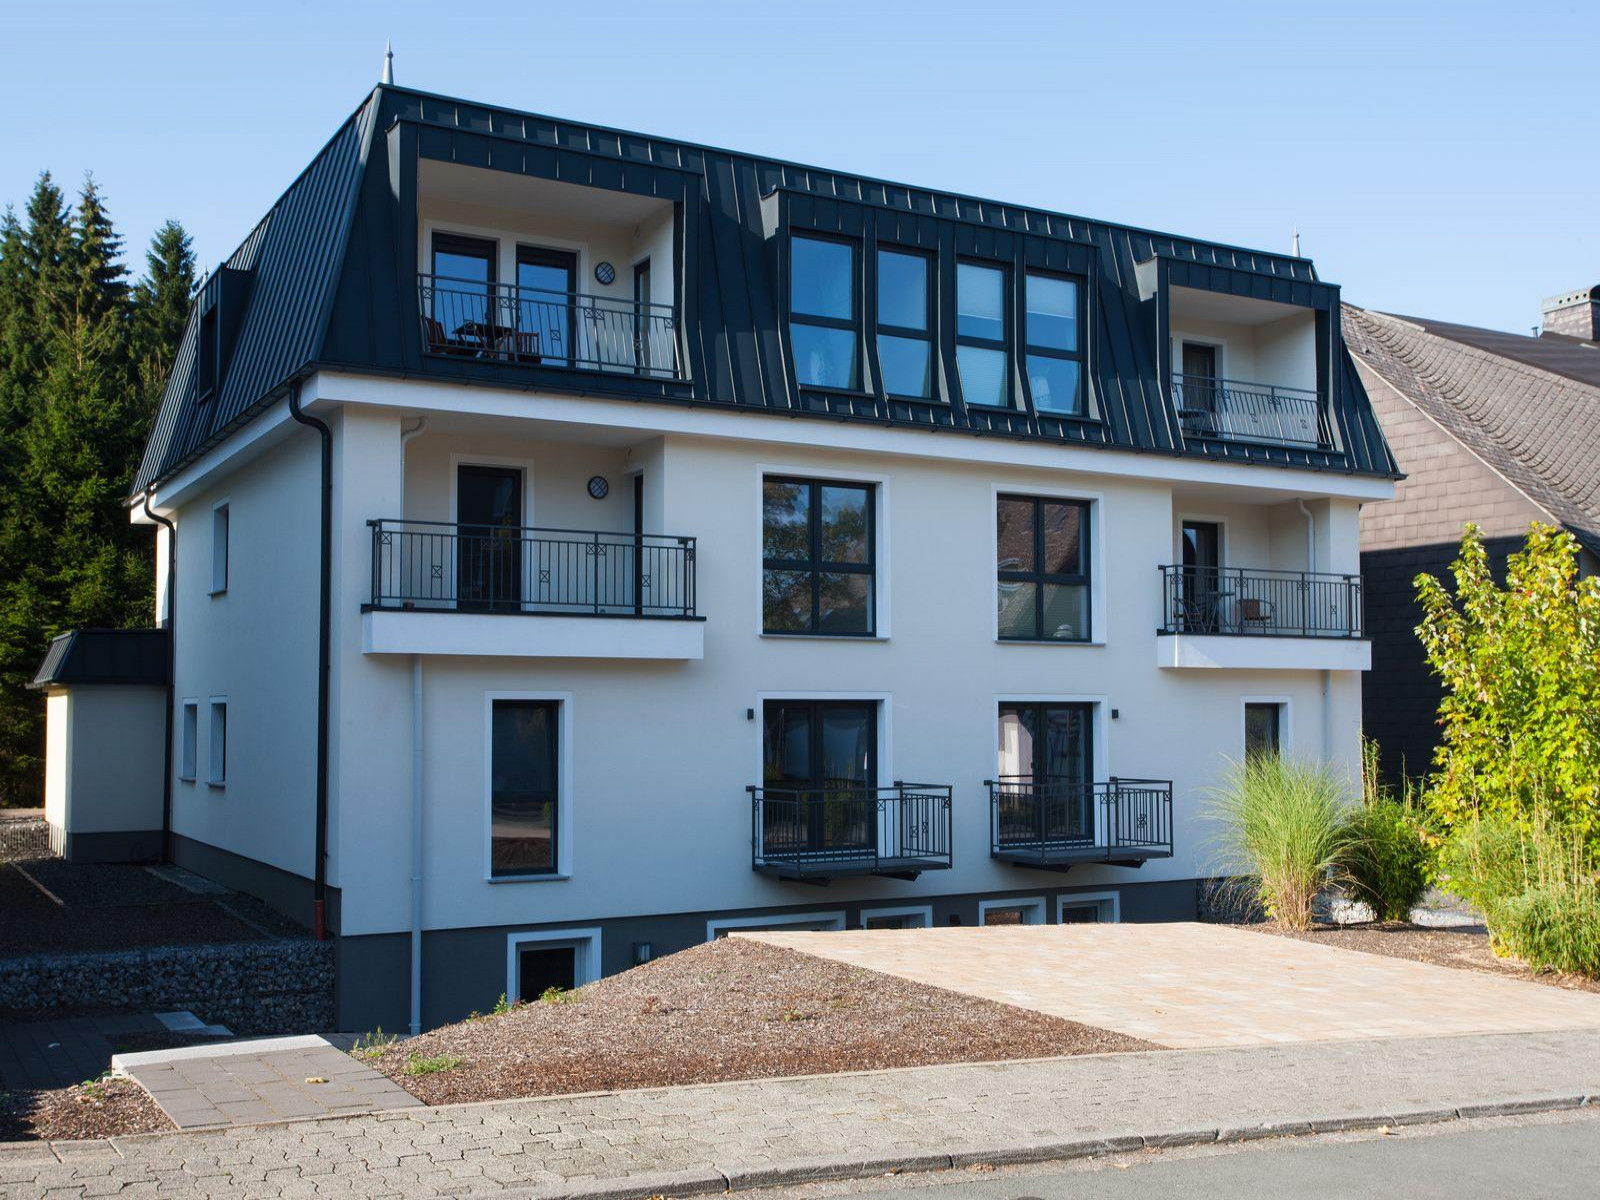 Zeer luxe 4 persoons vakantieappartement in Winterberg - Duitsland - Europa - Winterberg